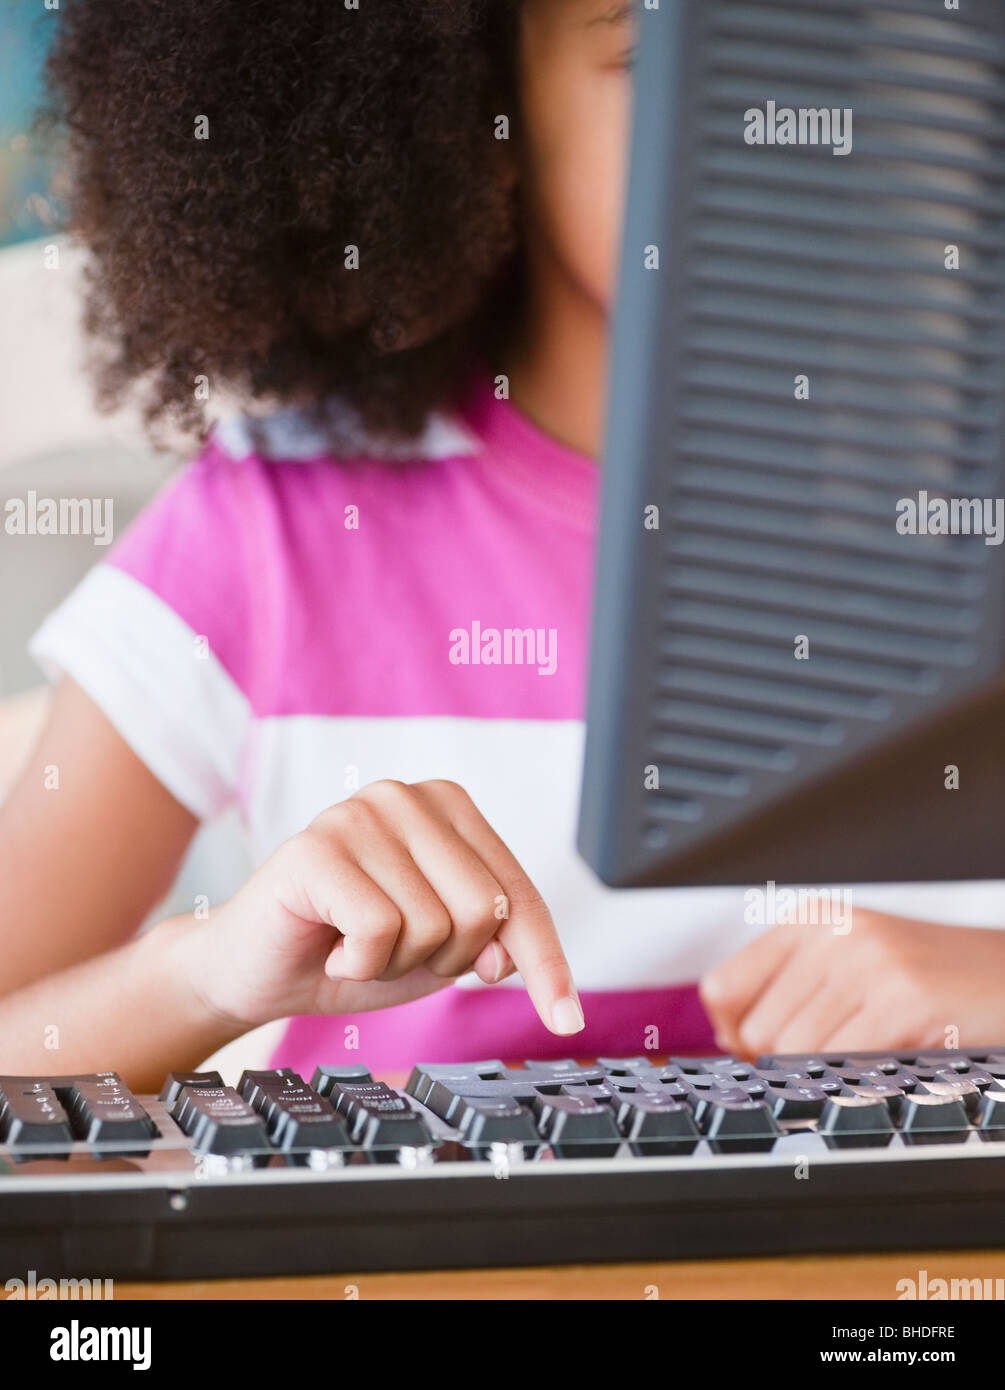 Hispanic girl using computer Stock Photo